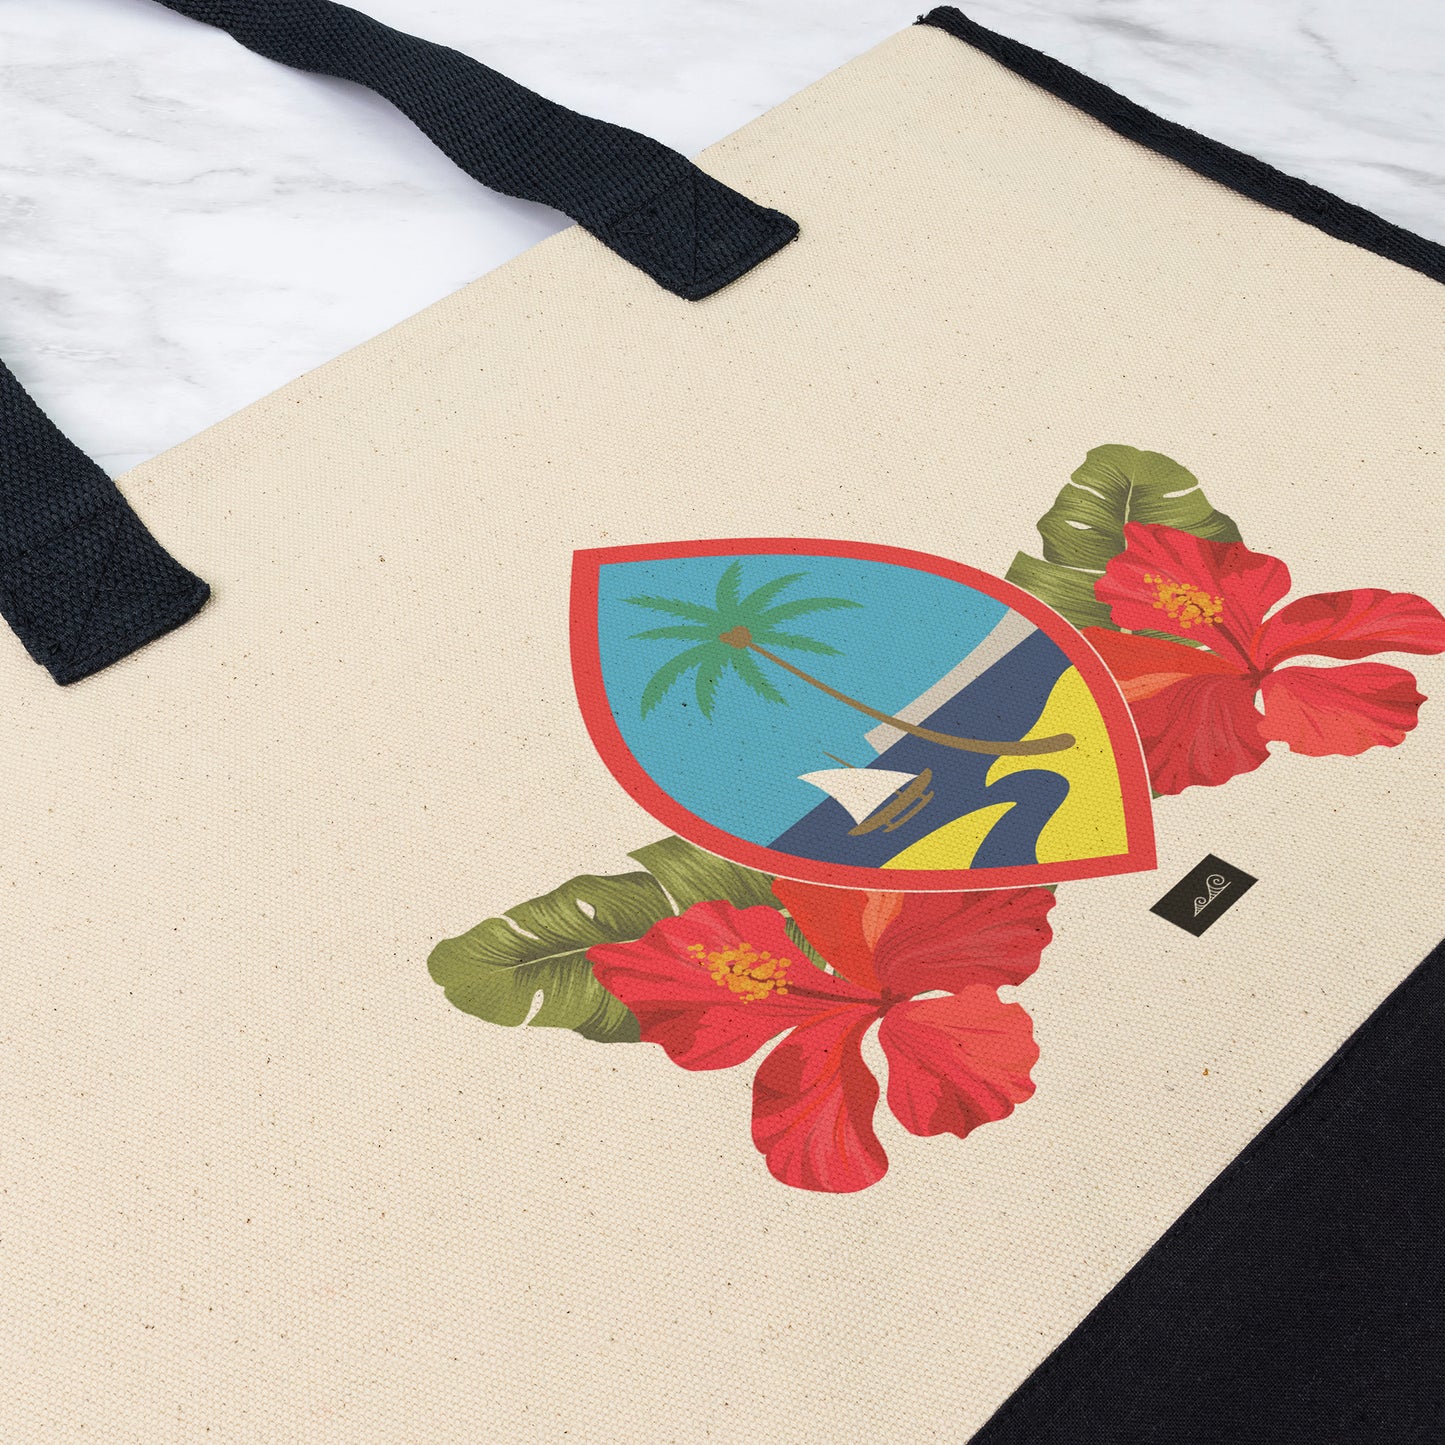 Guam Seal Hibiscus Paradise Premium Tote Bag